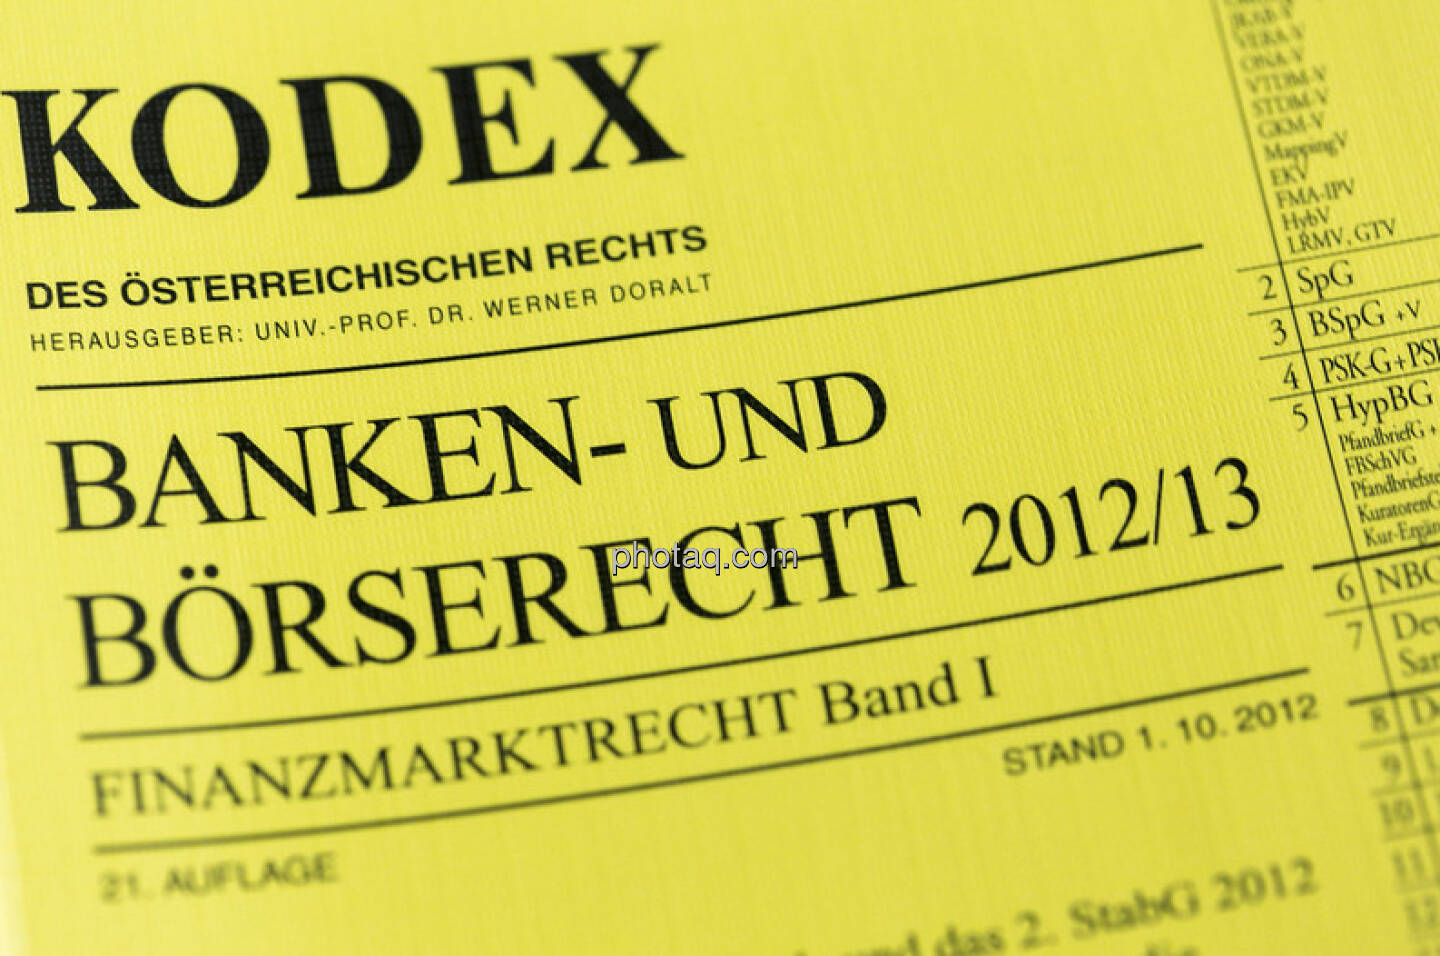 Kodex Banken- und Börserecht 2013 (c) Martina Draper